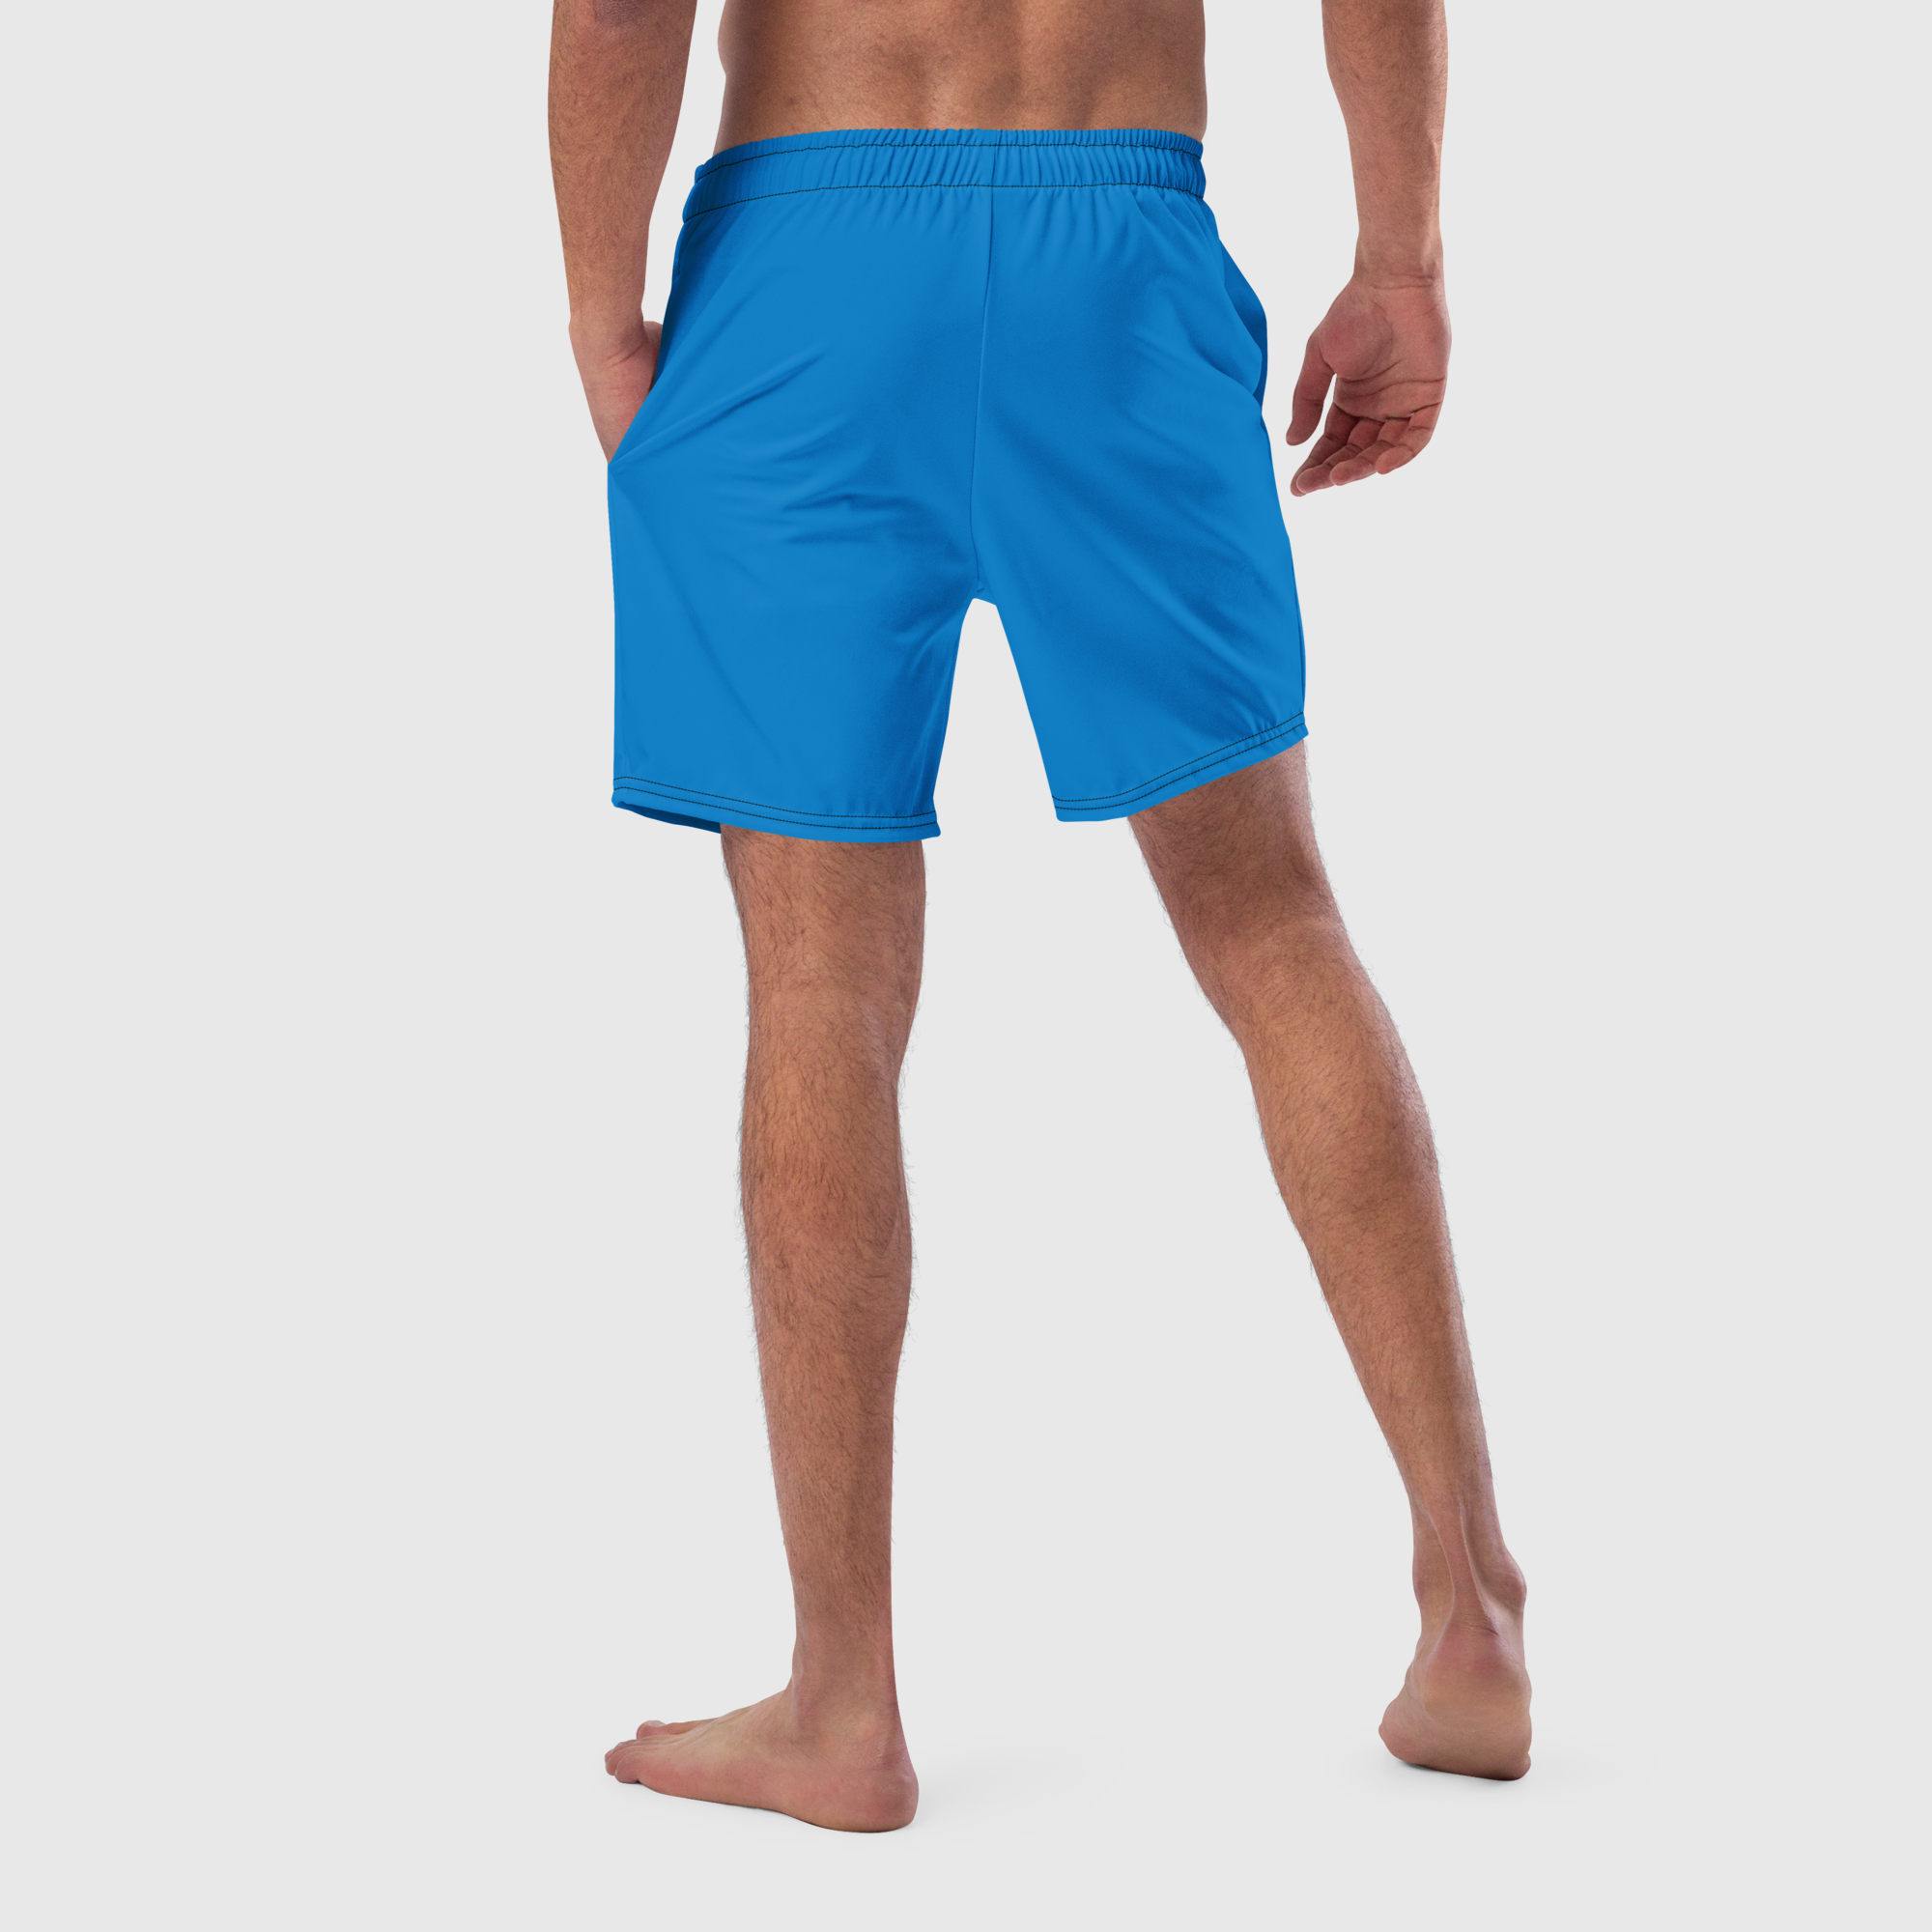 Men's swim trunks - Blue